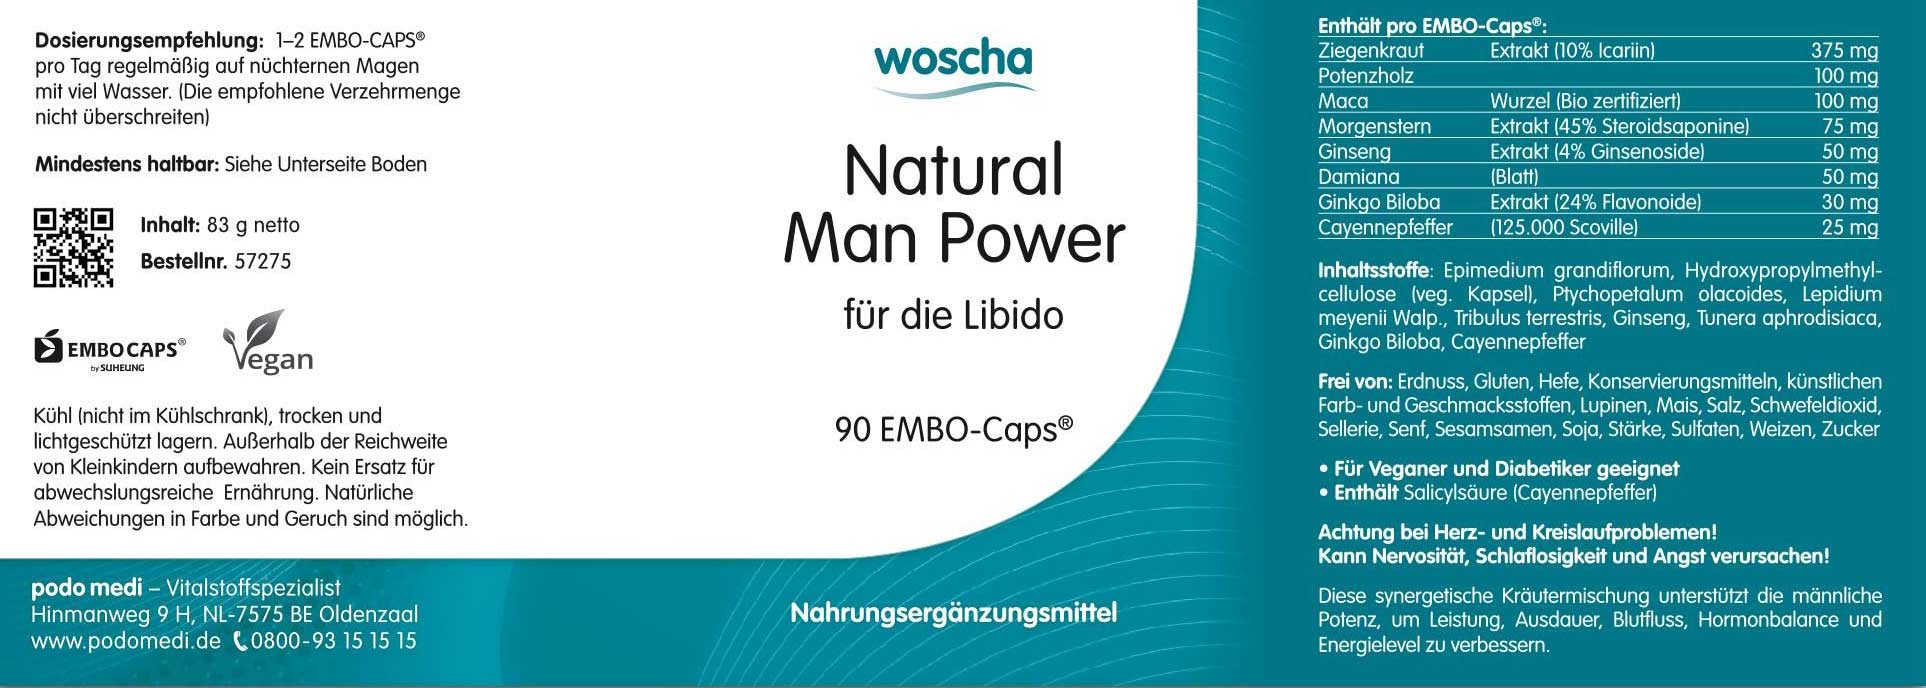 Woscha Natural Man Power von podo medi beinhaltet 90 Kapseln Etikett